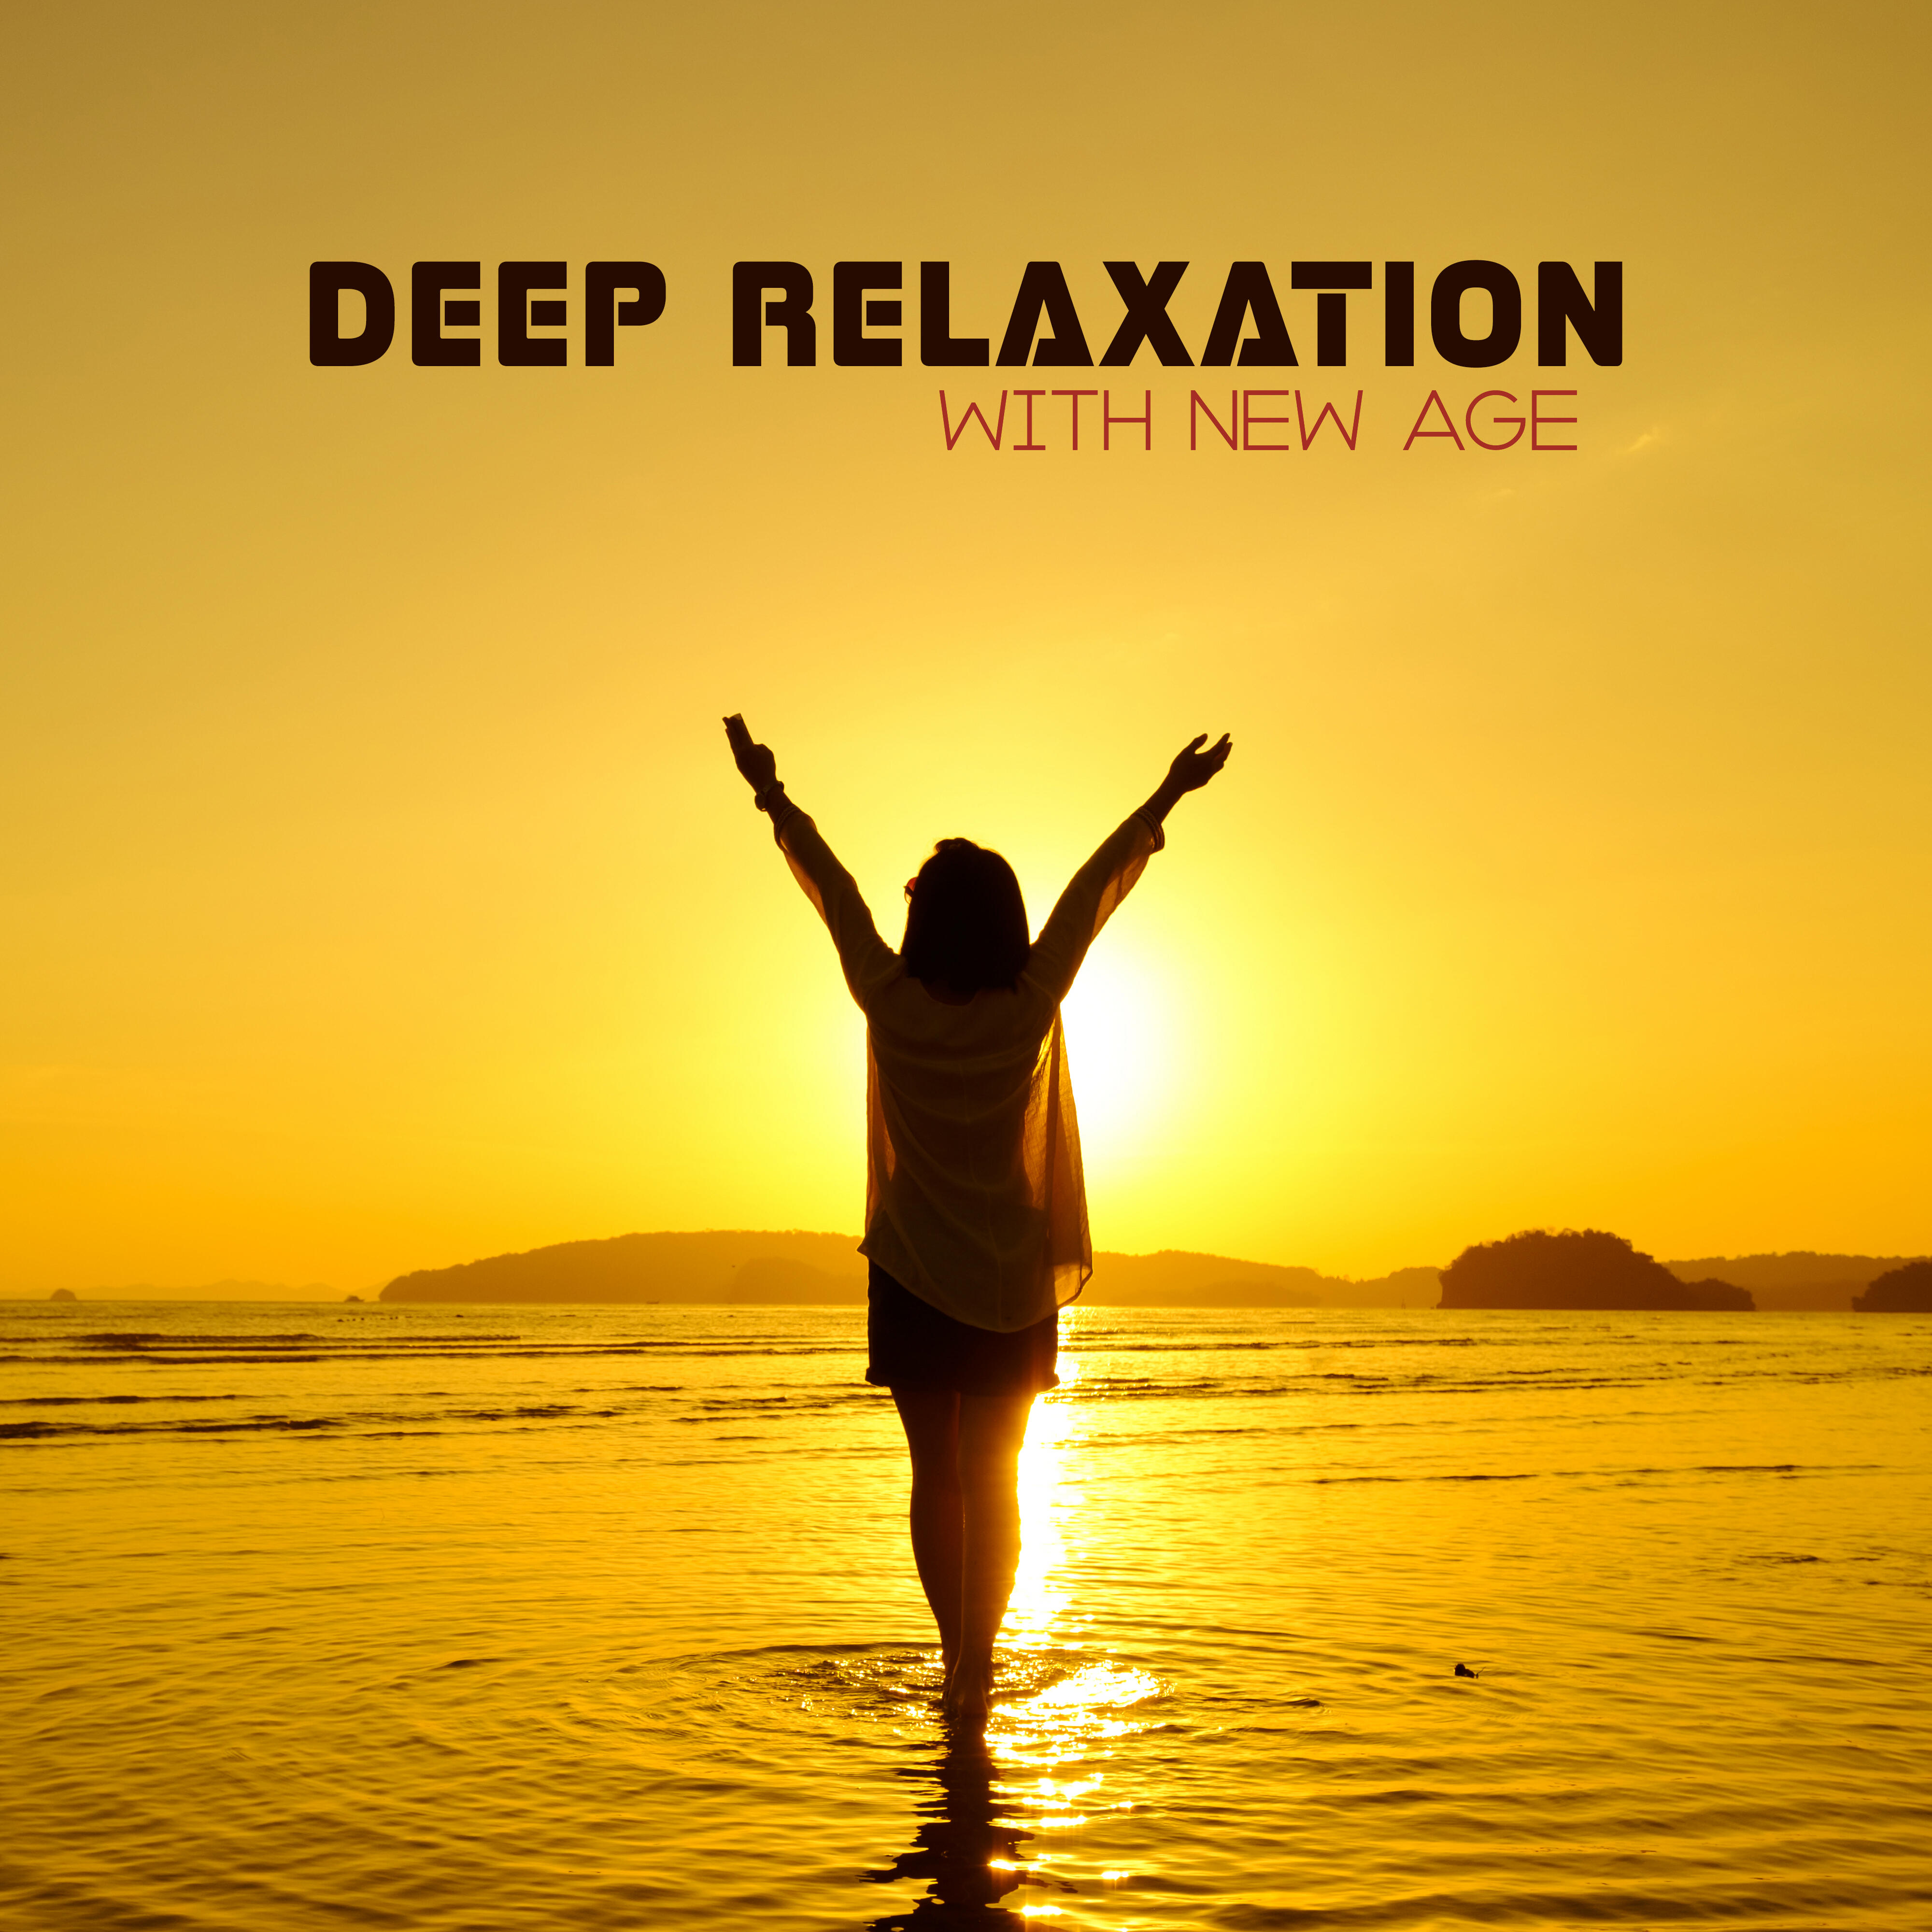 Deep relax music